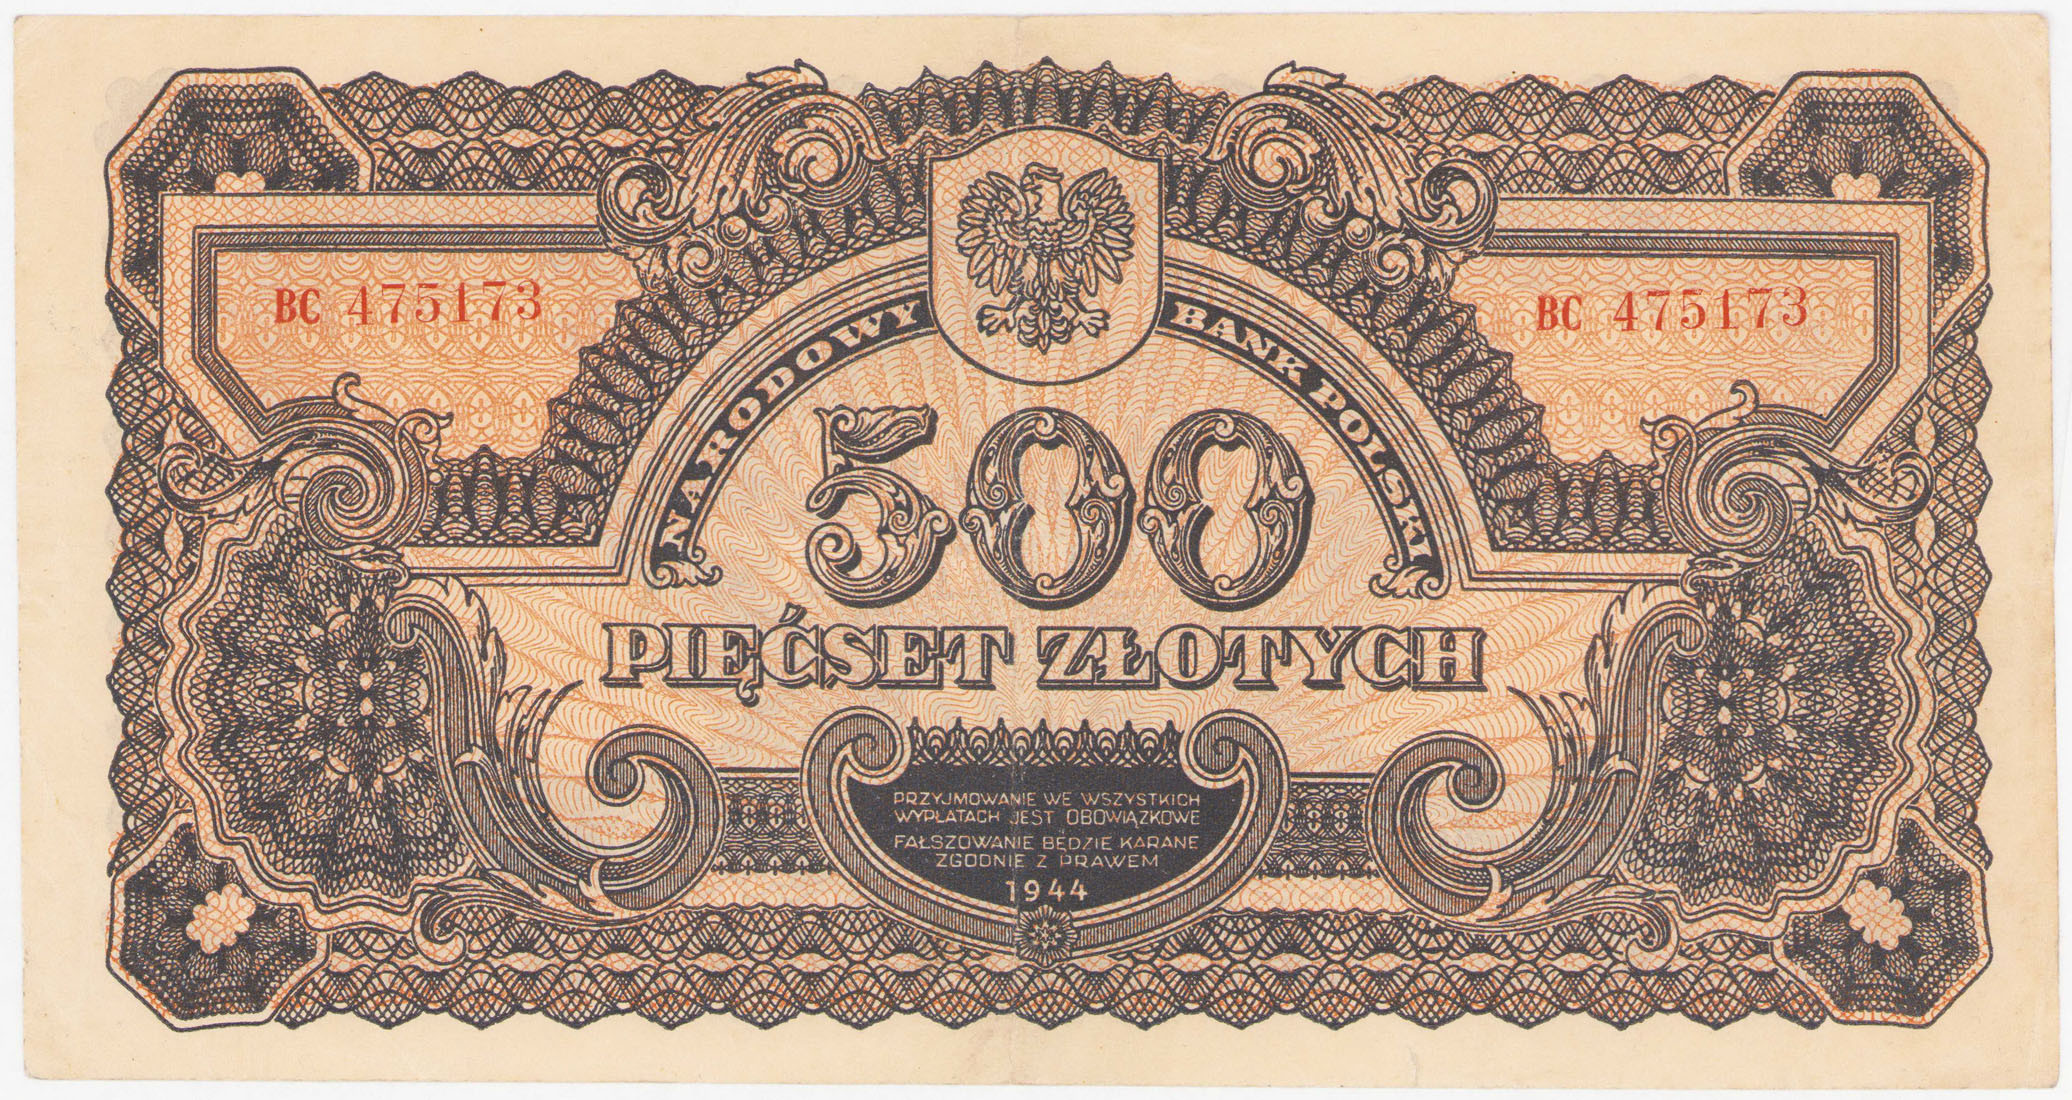 500 złotych 1944 seria BC, - OBOWIĄZKOWE - RZADKOŚĆ R5